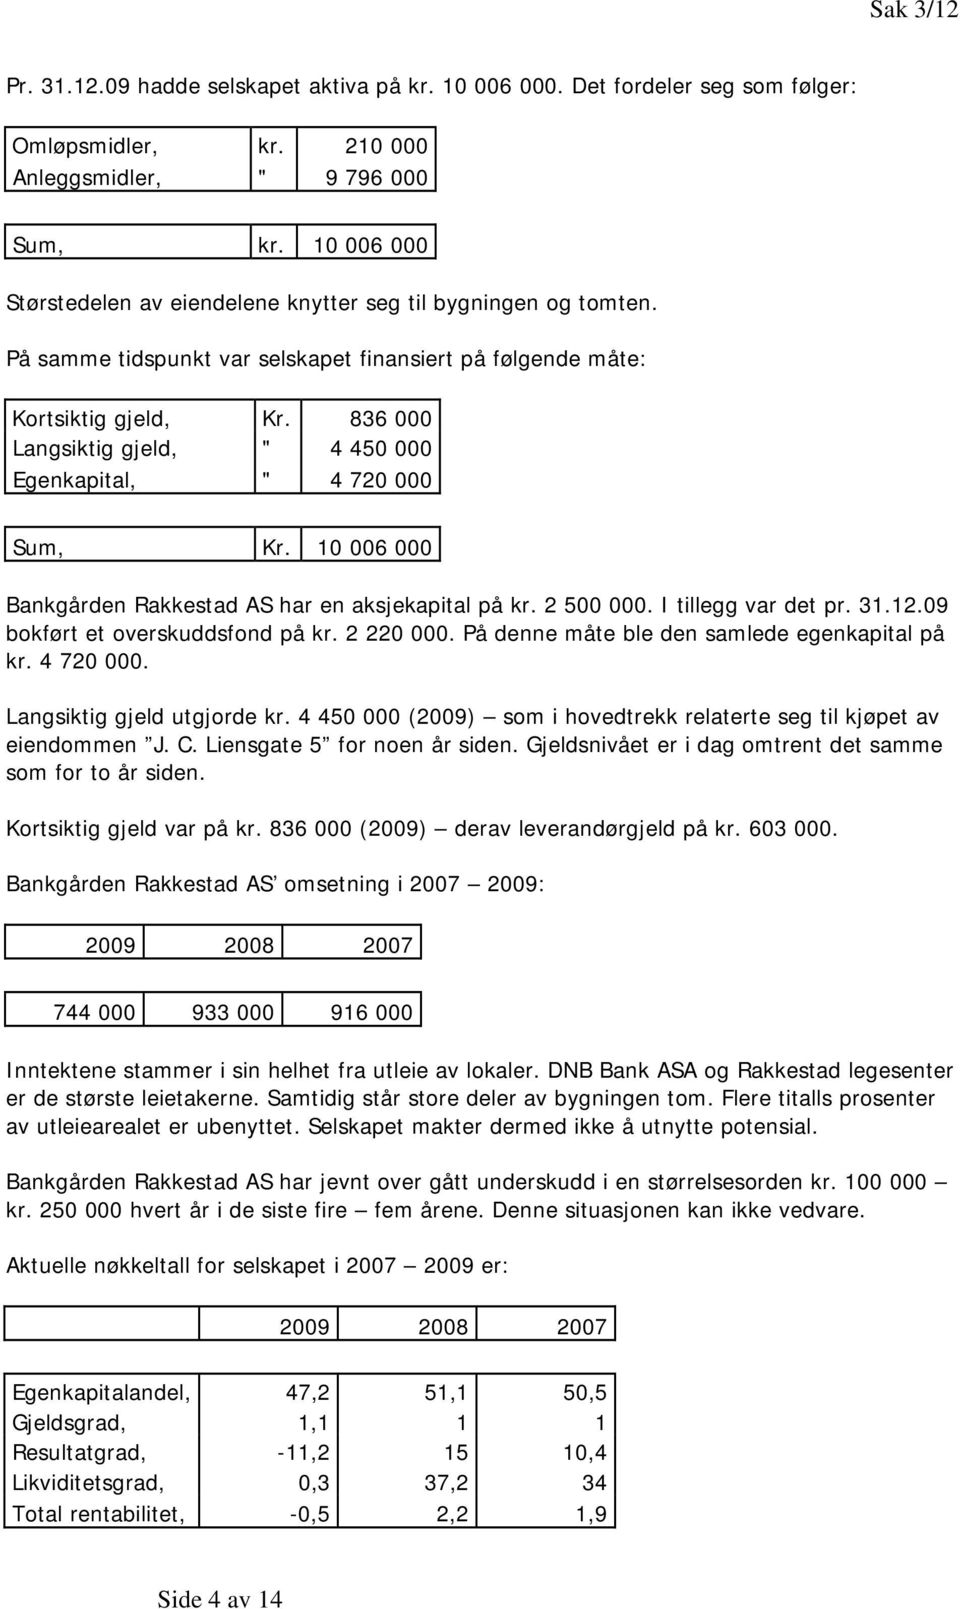 836 000 Langsiktig gjeld, " 4 450 000 Egenkapital, " 4 720 000 Sum, Kr. 10 006 000 Bankgården Rakkestad AS har en aksjekapital på kr. 2 500 000. I tillegg var det pr. 31.12.